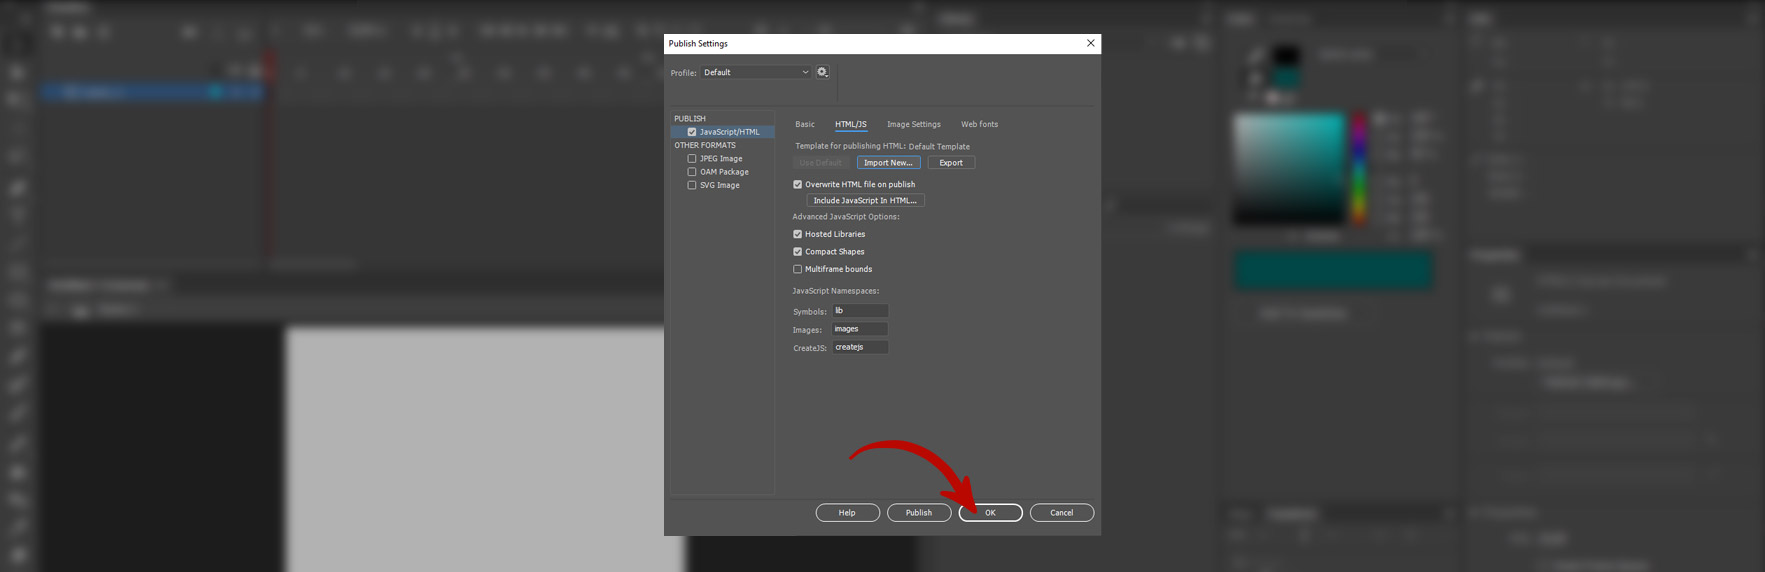 Скриншот программы Adobe Animate. Подтверждение выбранных настроек